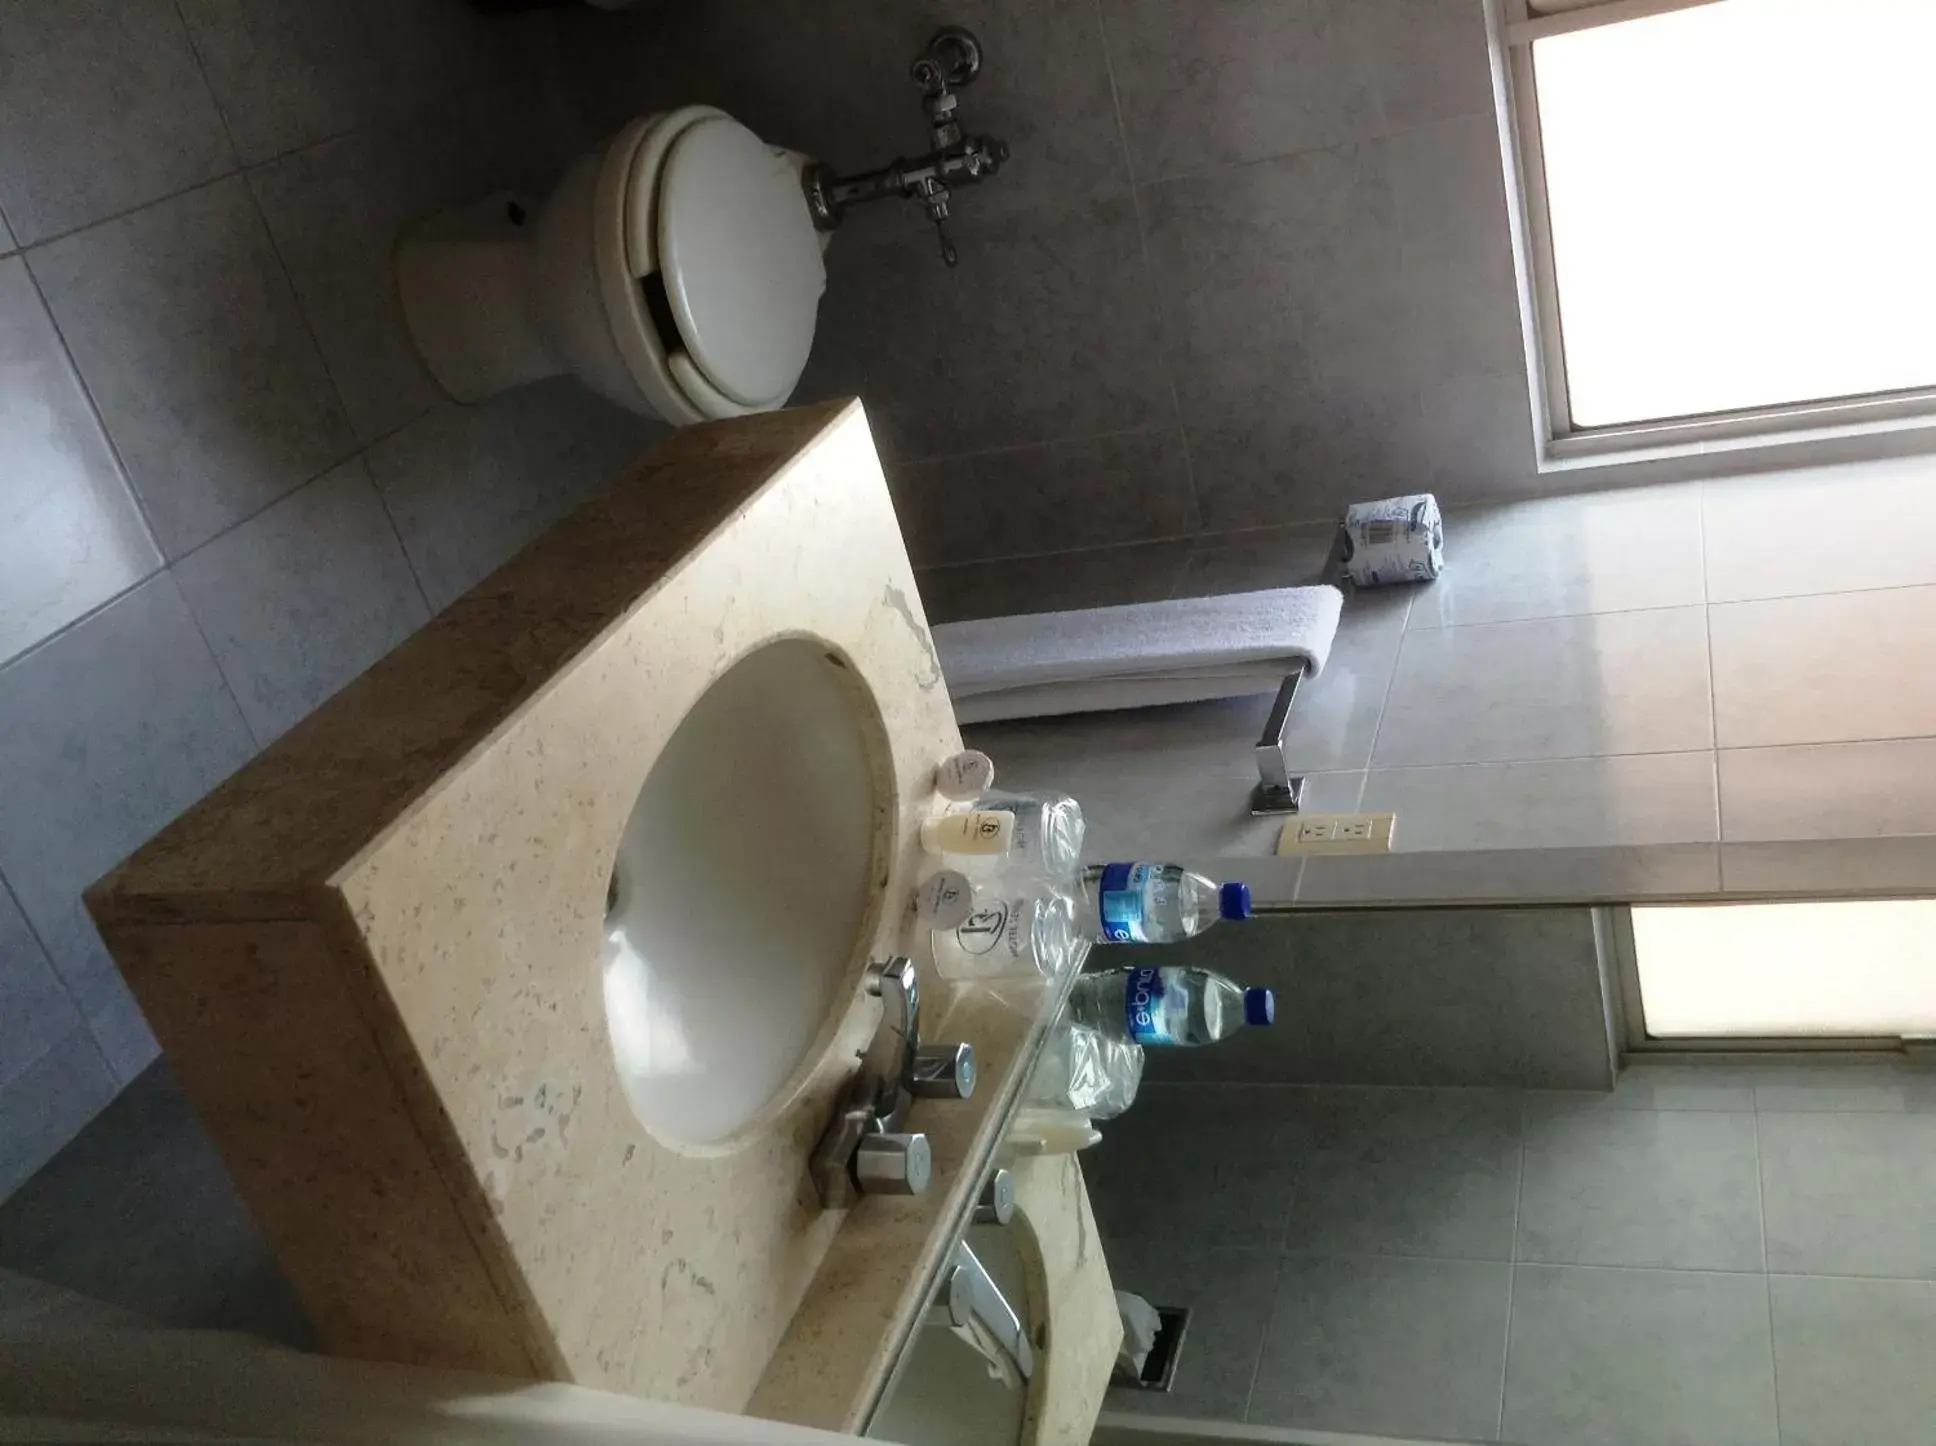 Bathroom in Hotel Sevilla